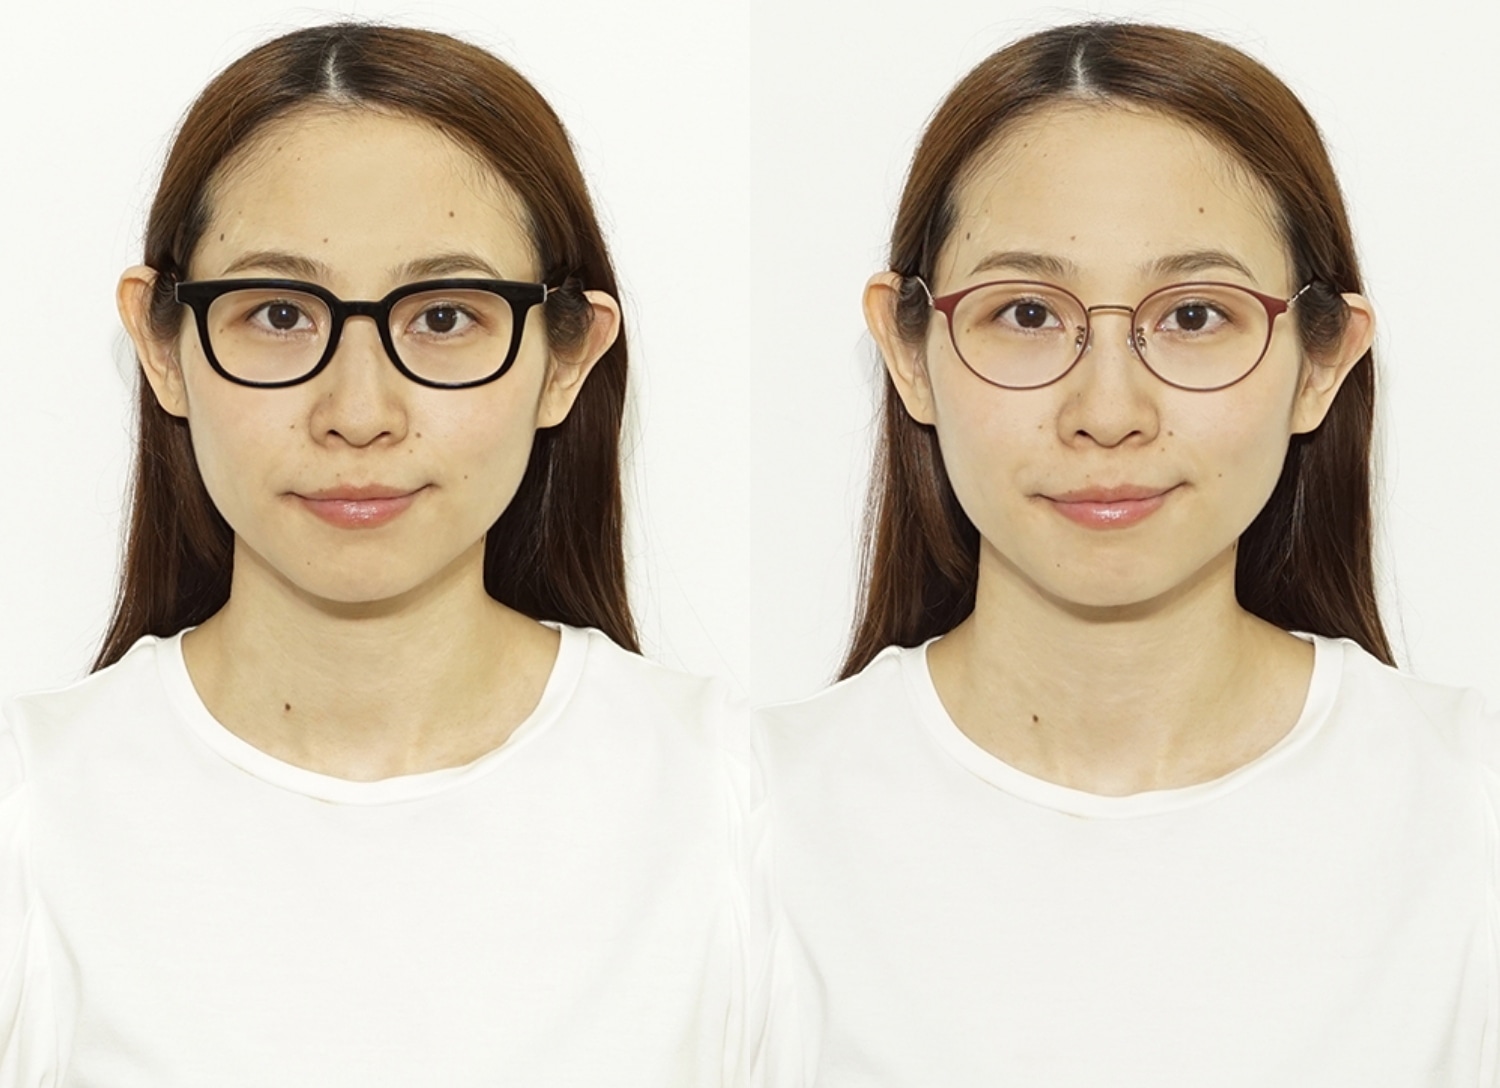 メガネで顔の印象が変わる 小顔 デカ目 メイク映えにおすすめのメガネ選び 重田みゆき先生監修 108 メガネのzoffオンラインストア